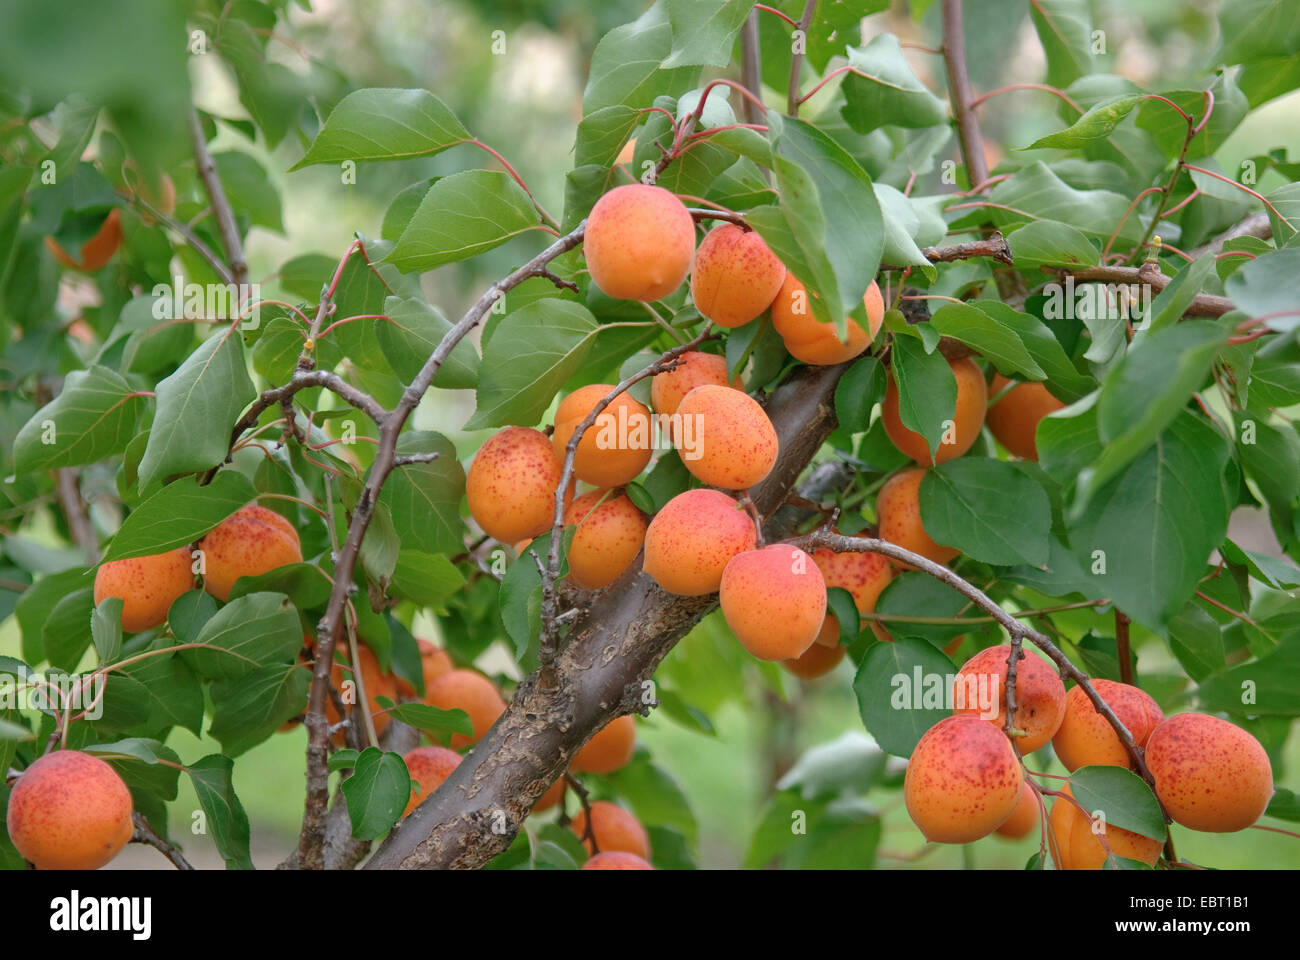 apricot tree (Prunus armeniaca 'Orangered', Prunus armeniaca Orangered), cultivar Orangered, apricots on a tree Stock Photo